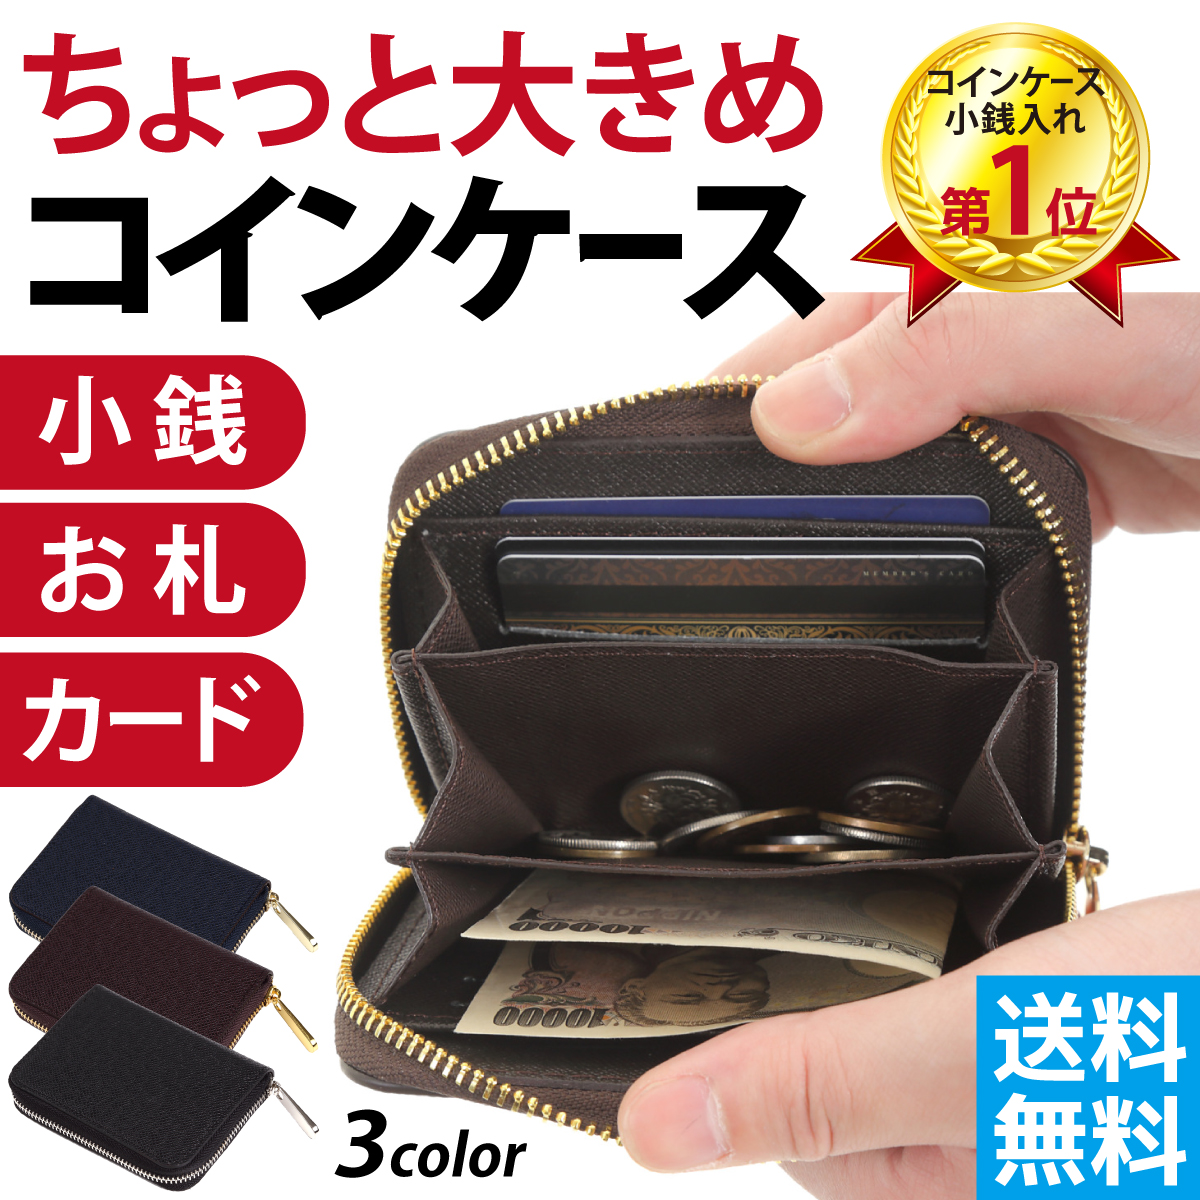 財布 小銭入れ コインケース - コインケース